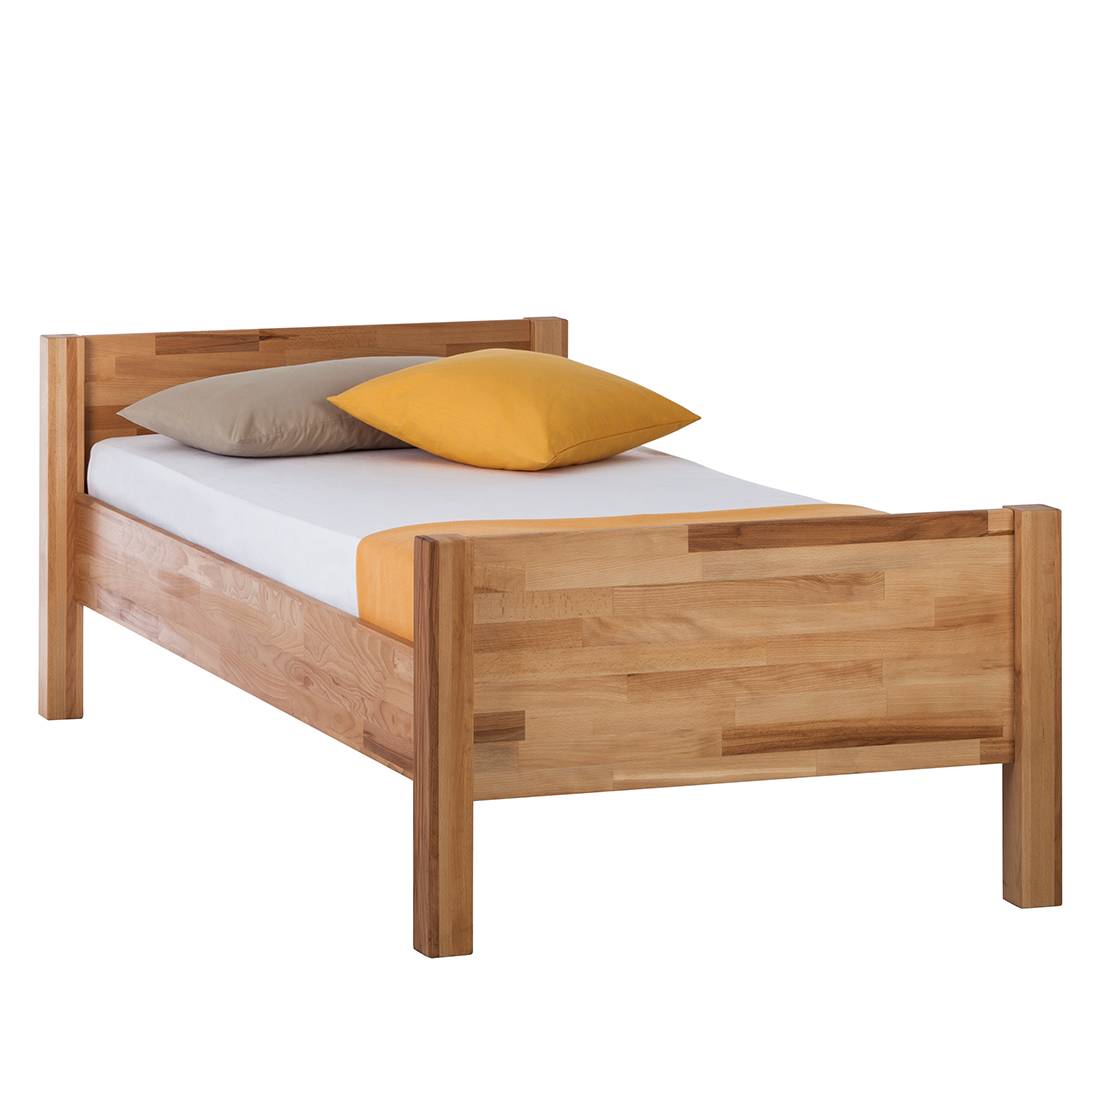 Vooruit koppeling Brawl Massief houten bed JohnWOOD kopen | home24